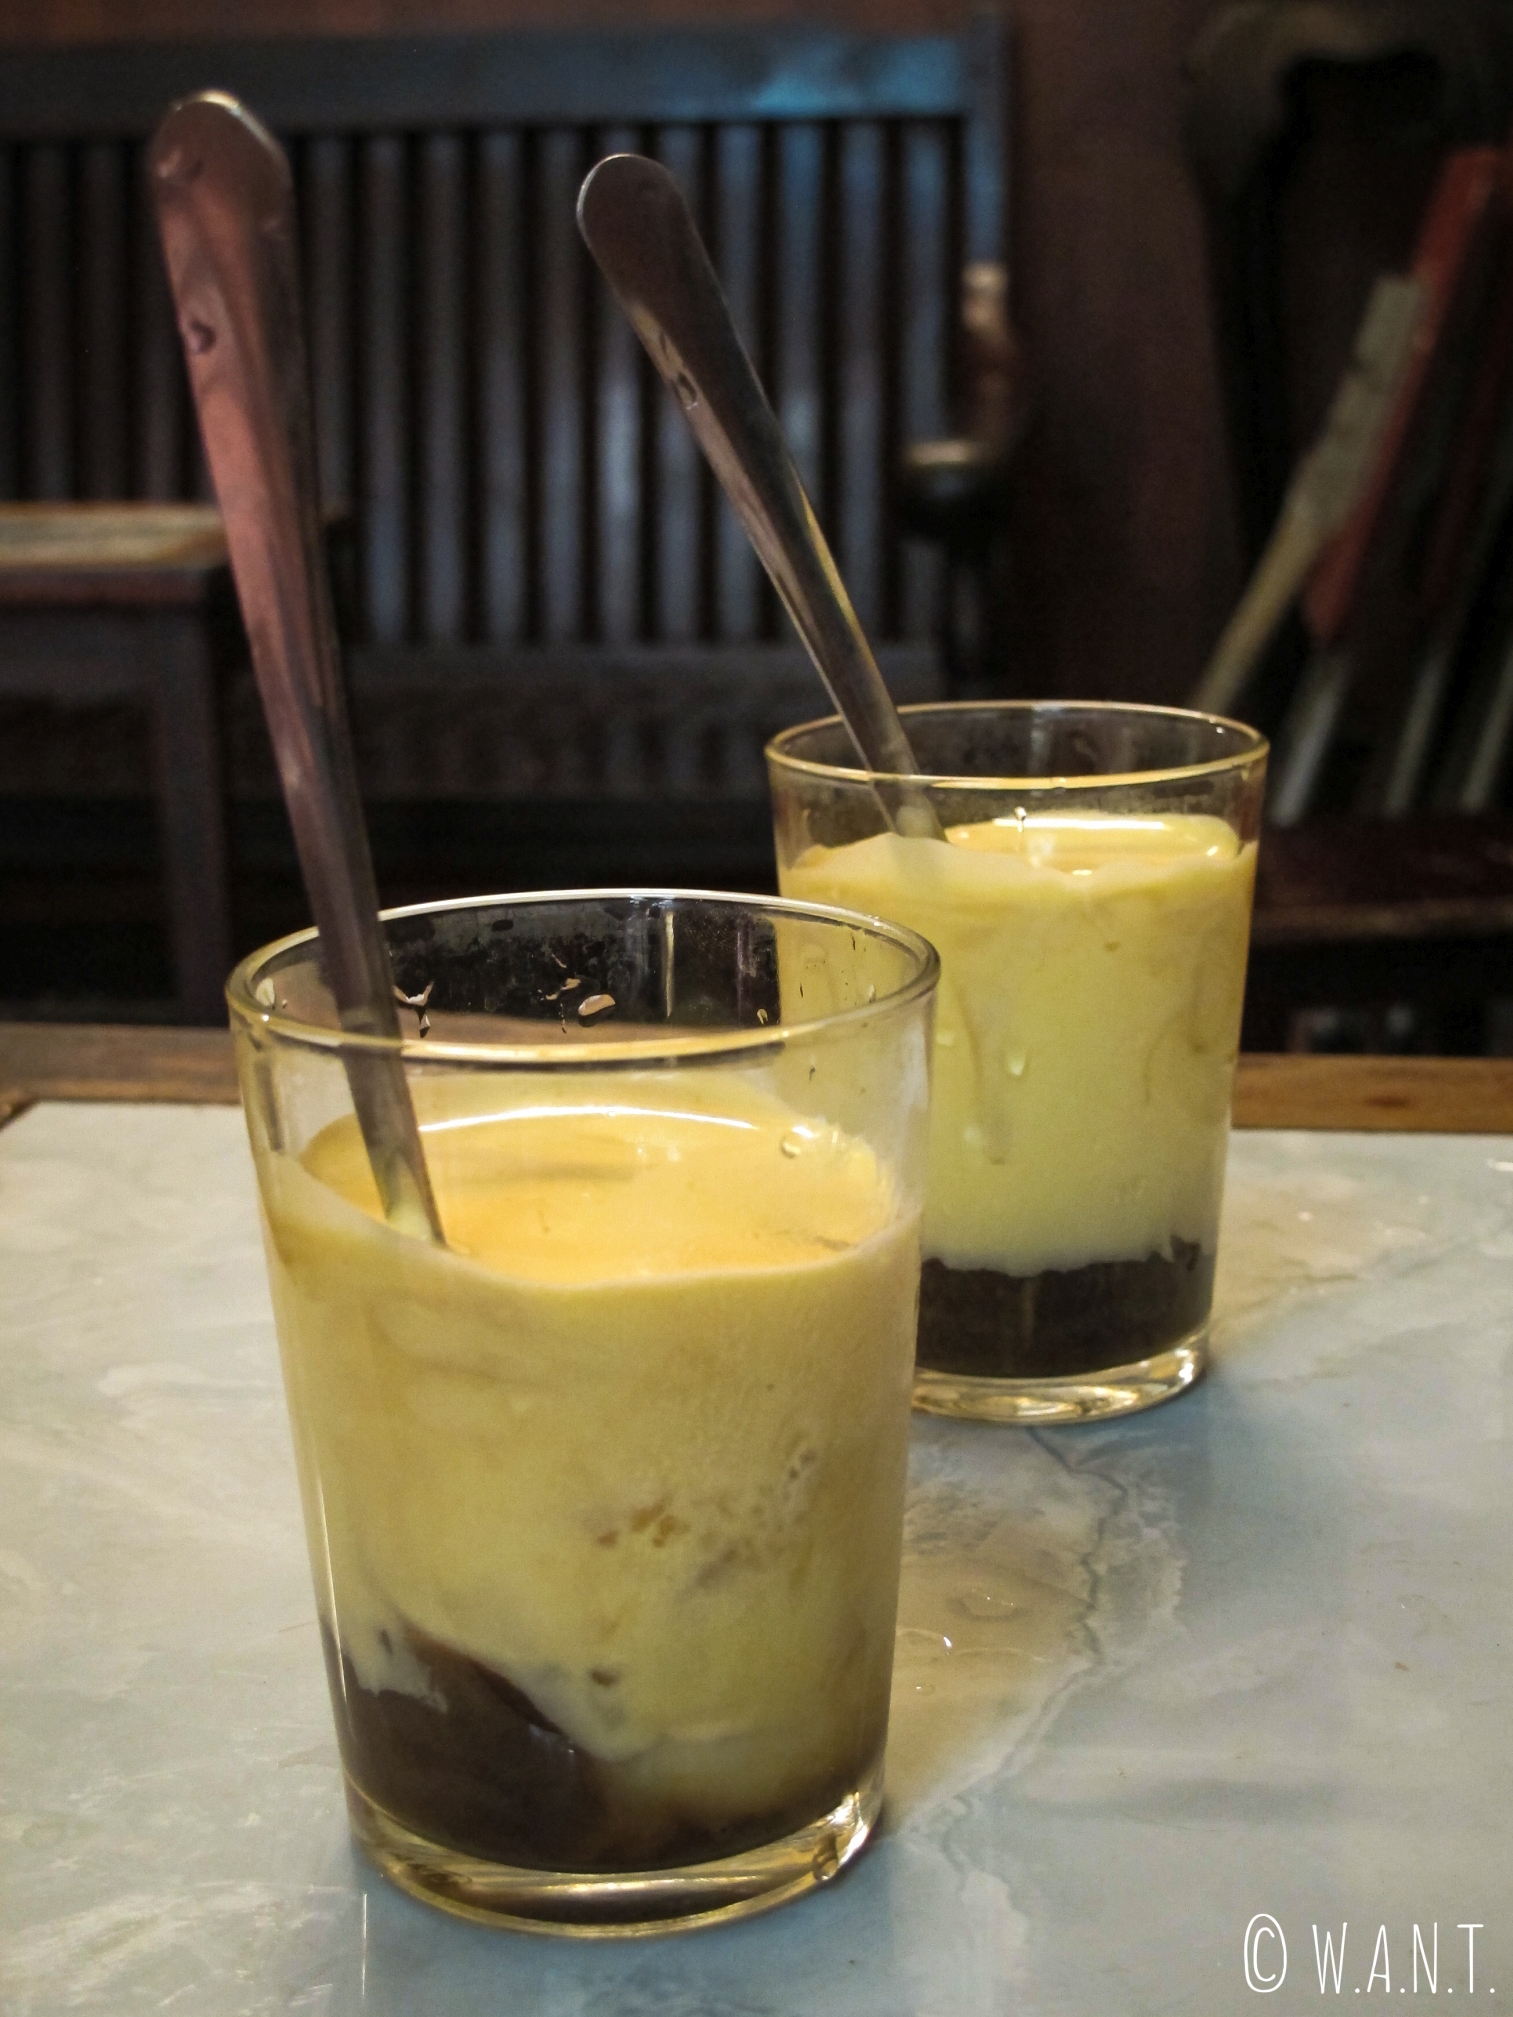 Le egg coffee est une spécialité de Hanoï